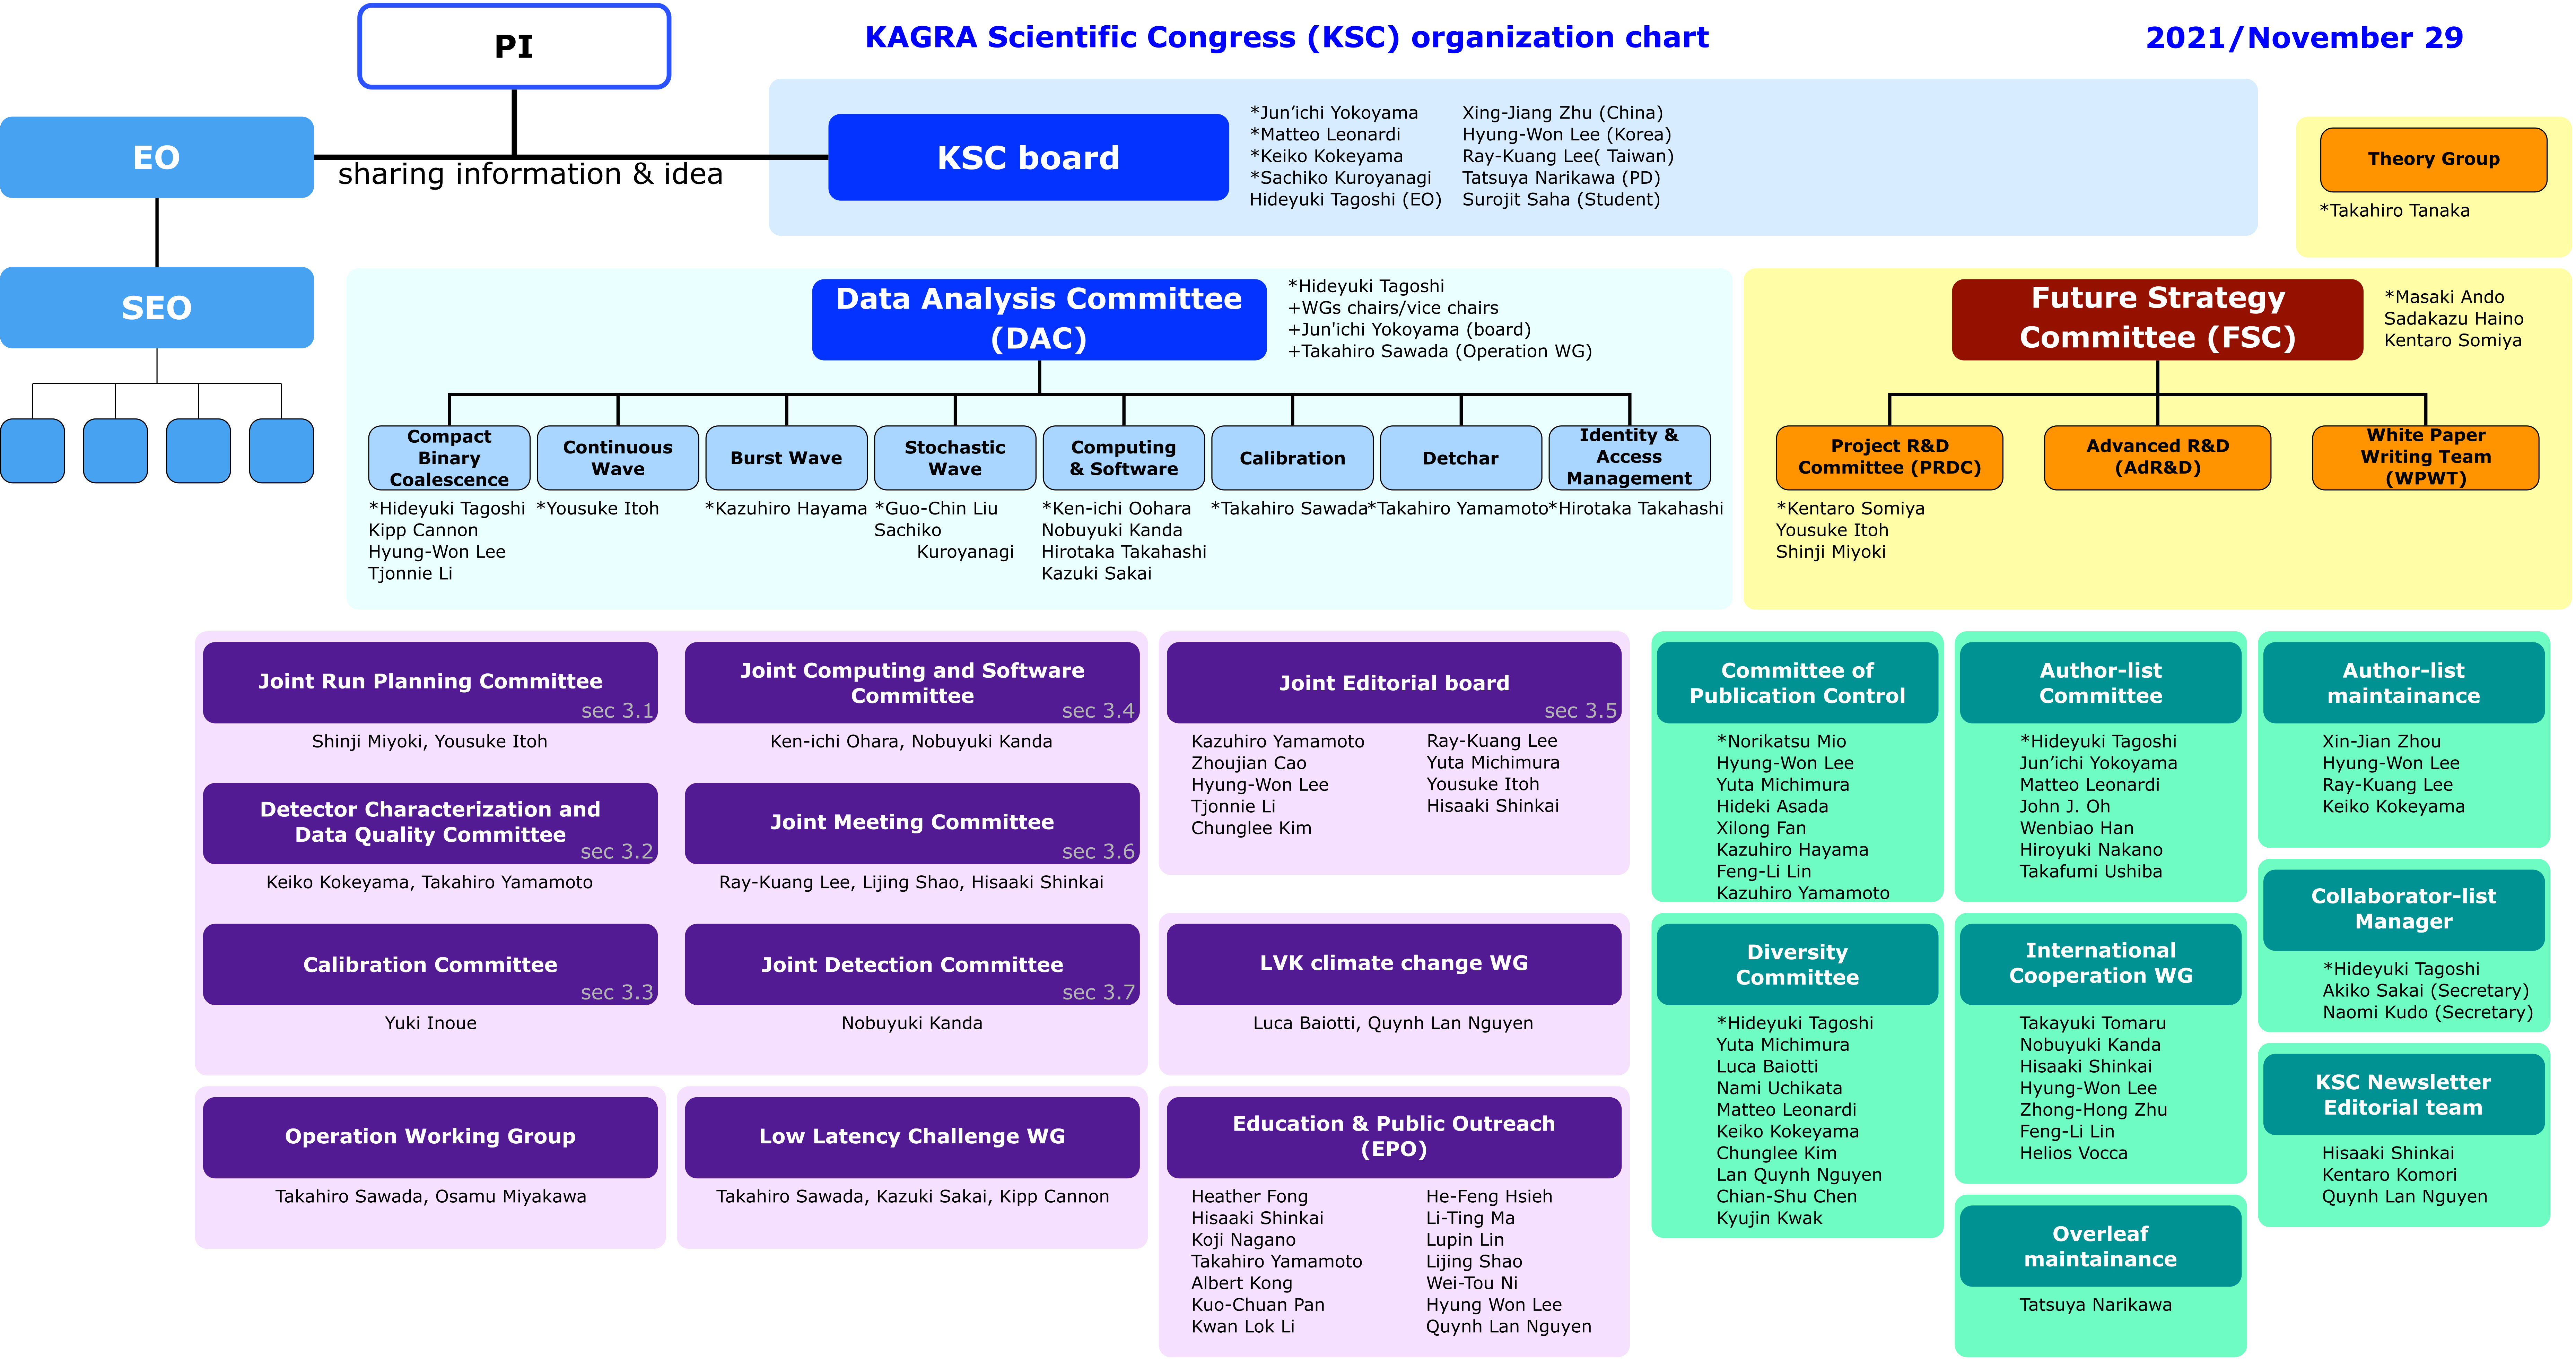 KSC organization chart (2021/Nov 26)